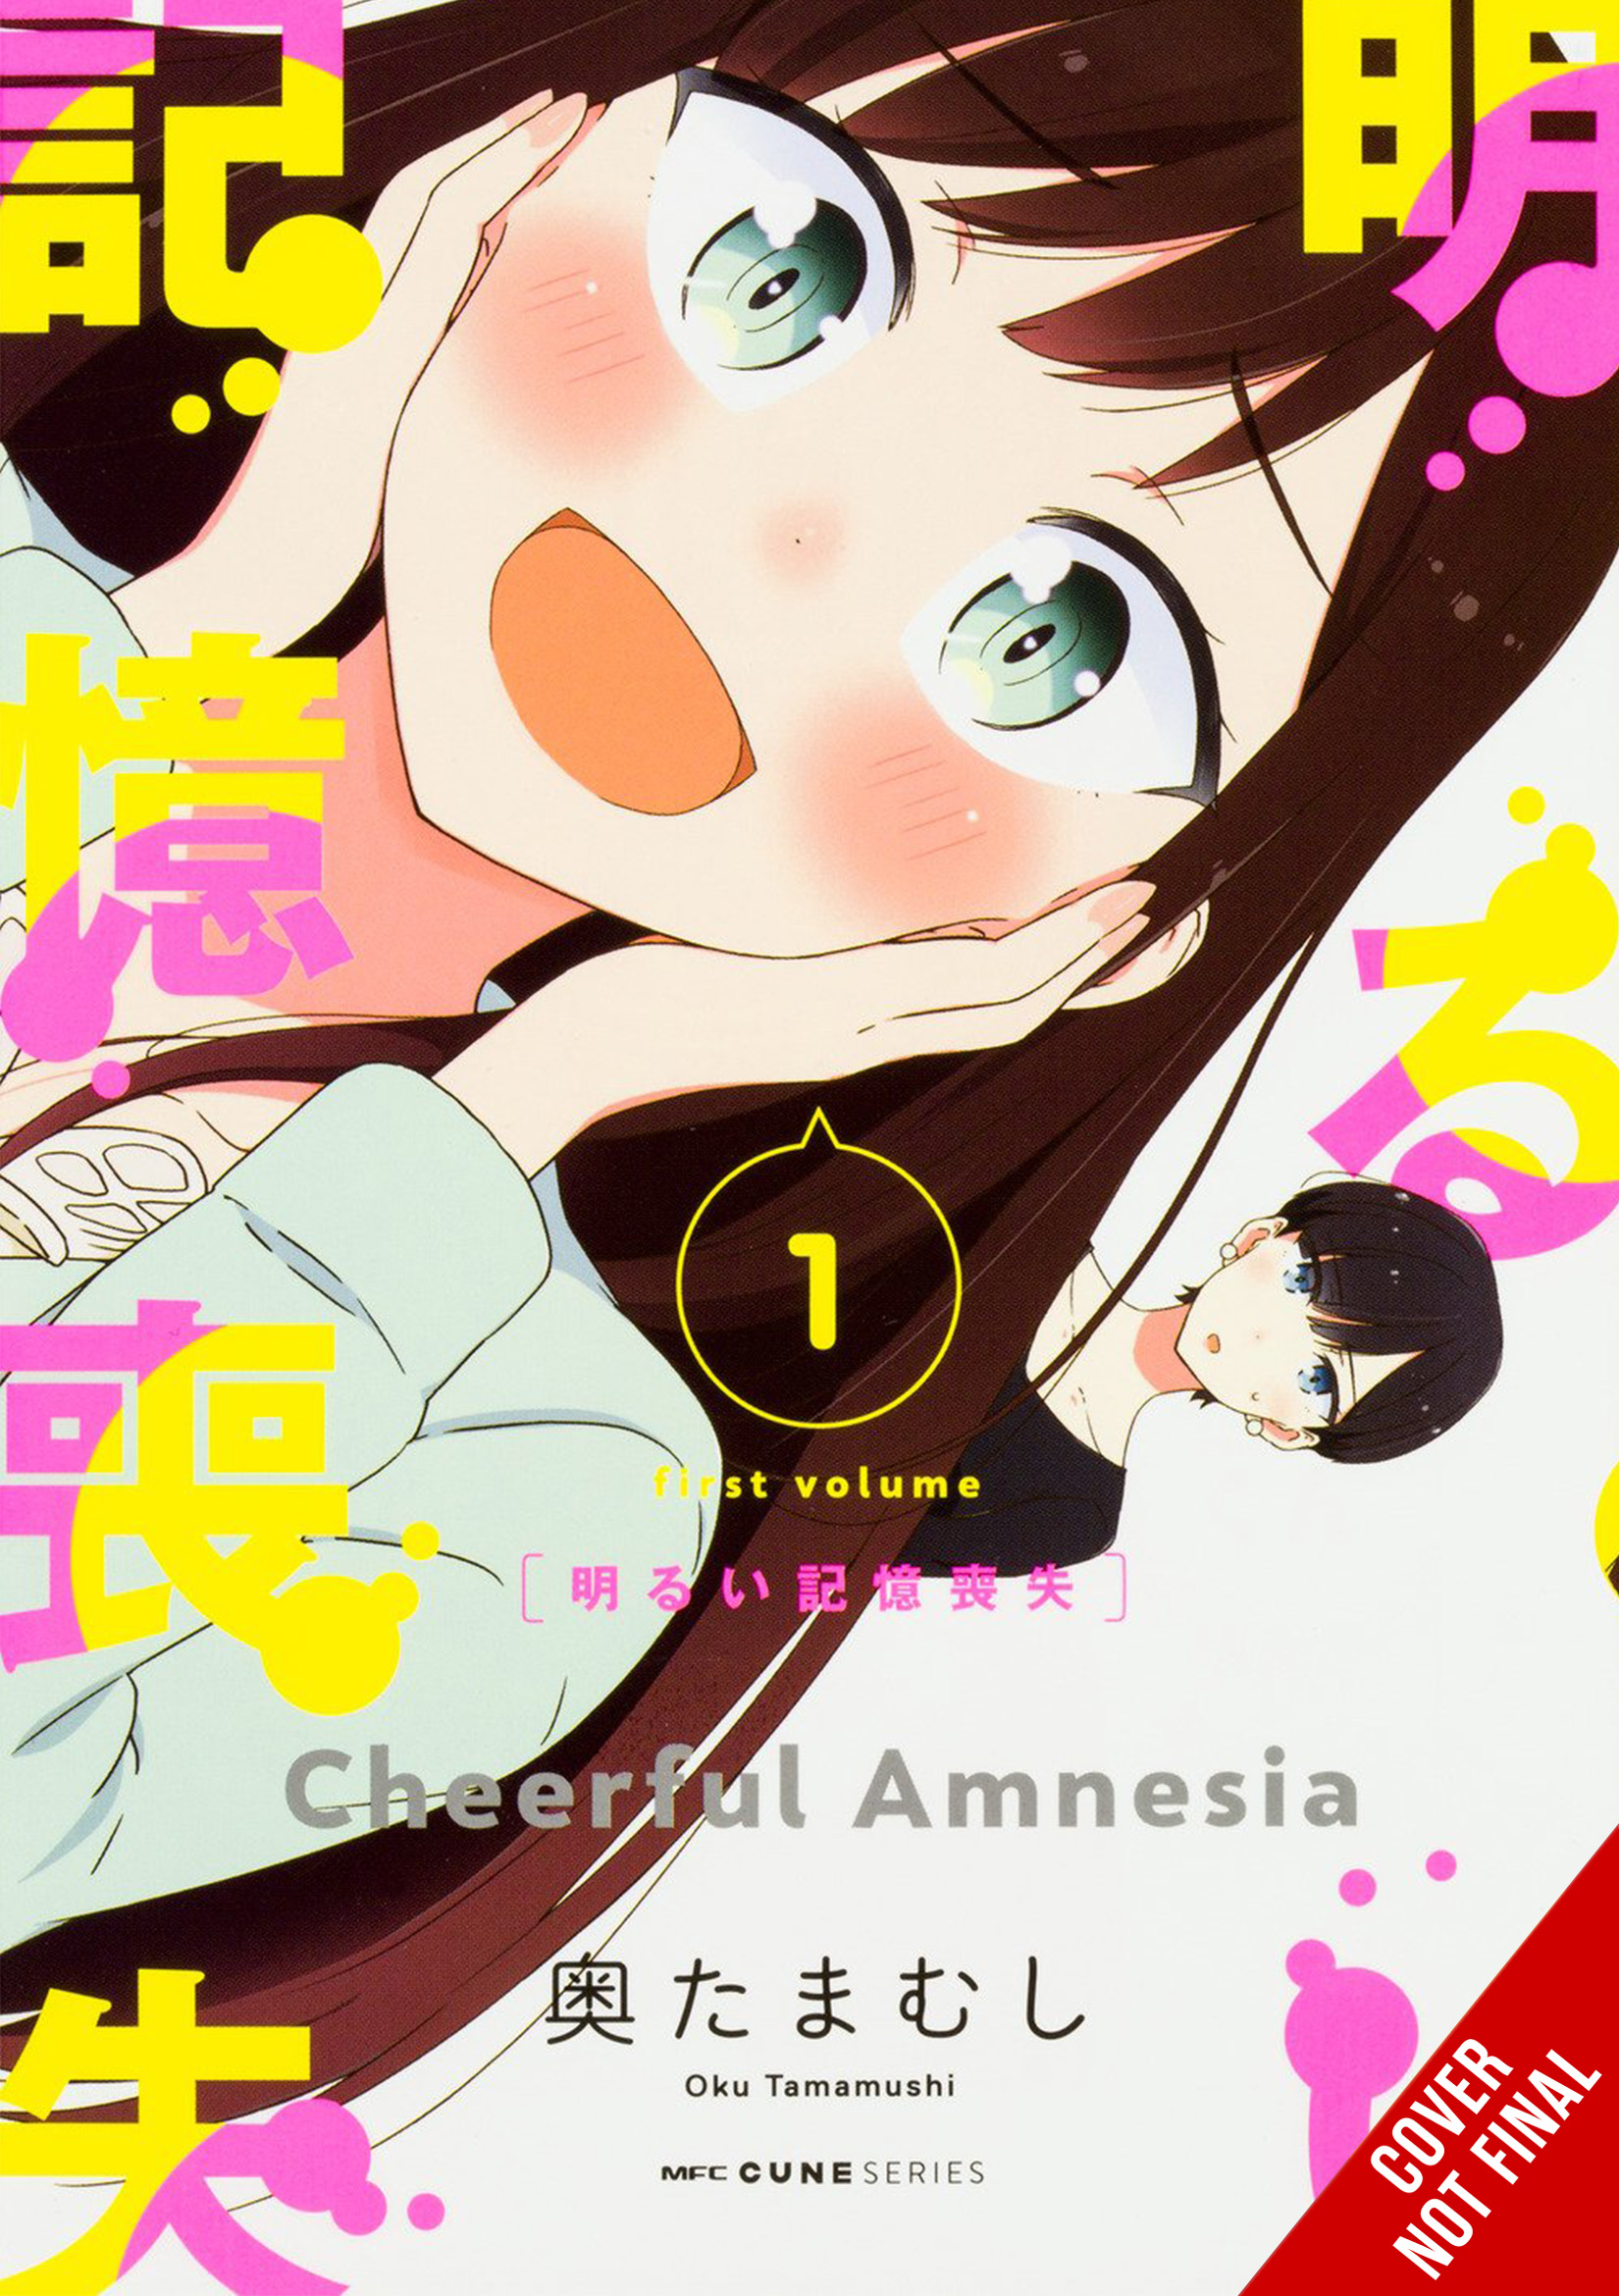 Cheerful Amnesia Manga Volume 1